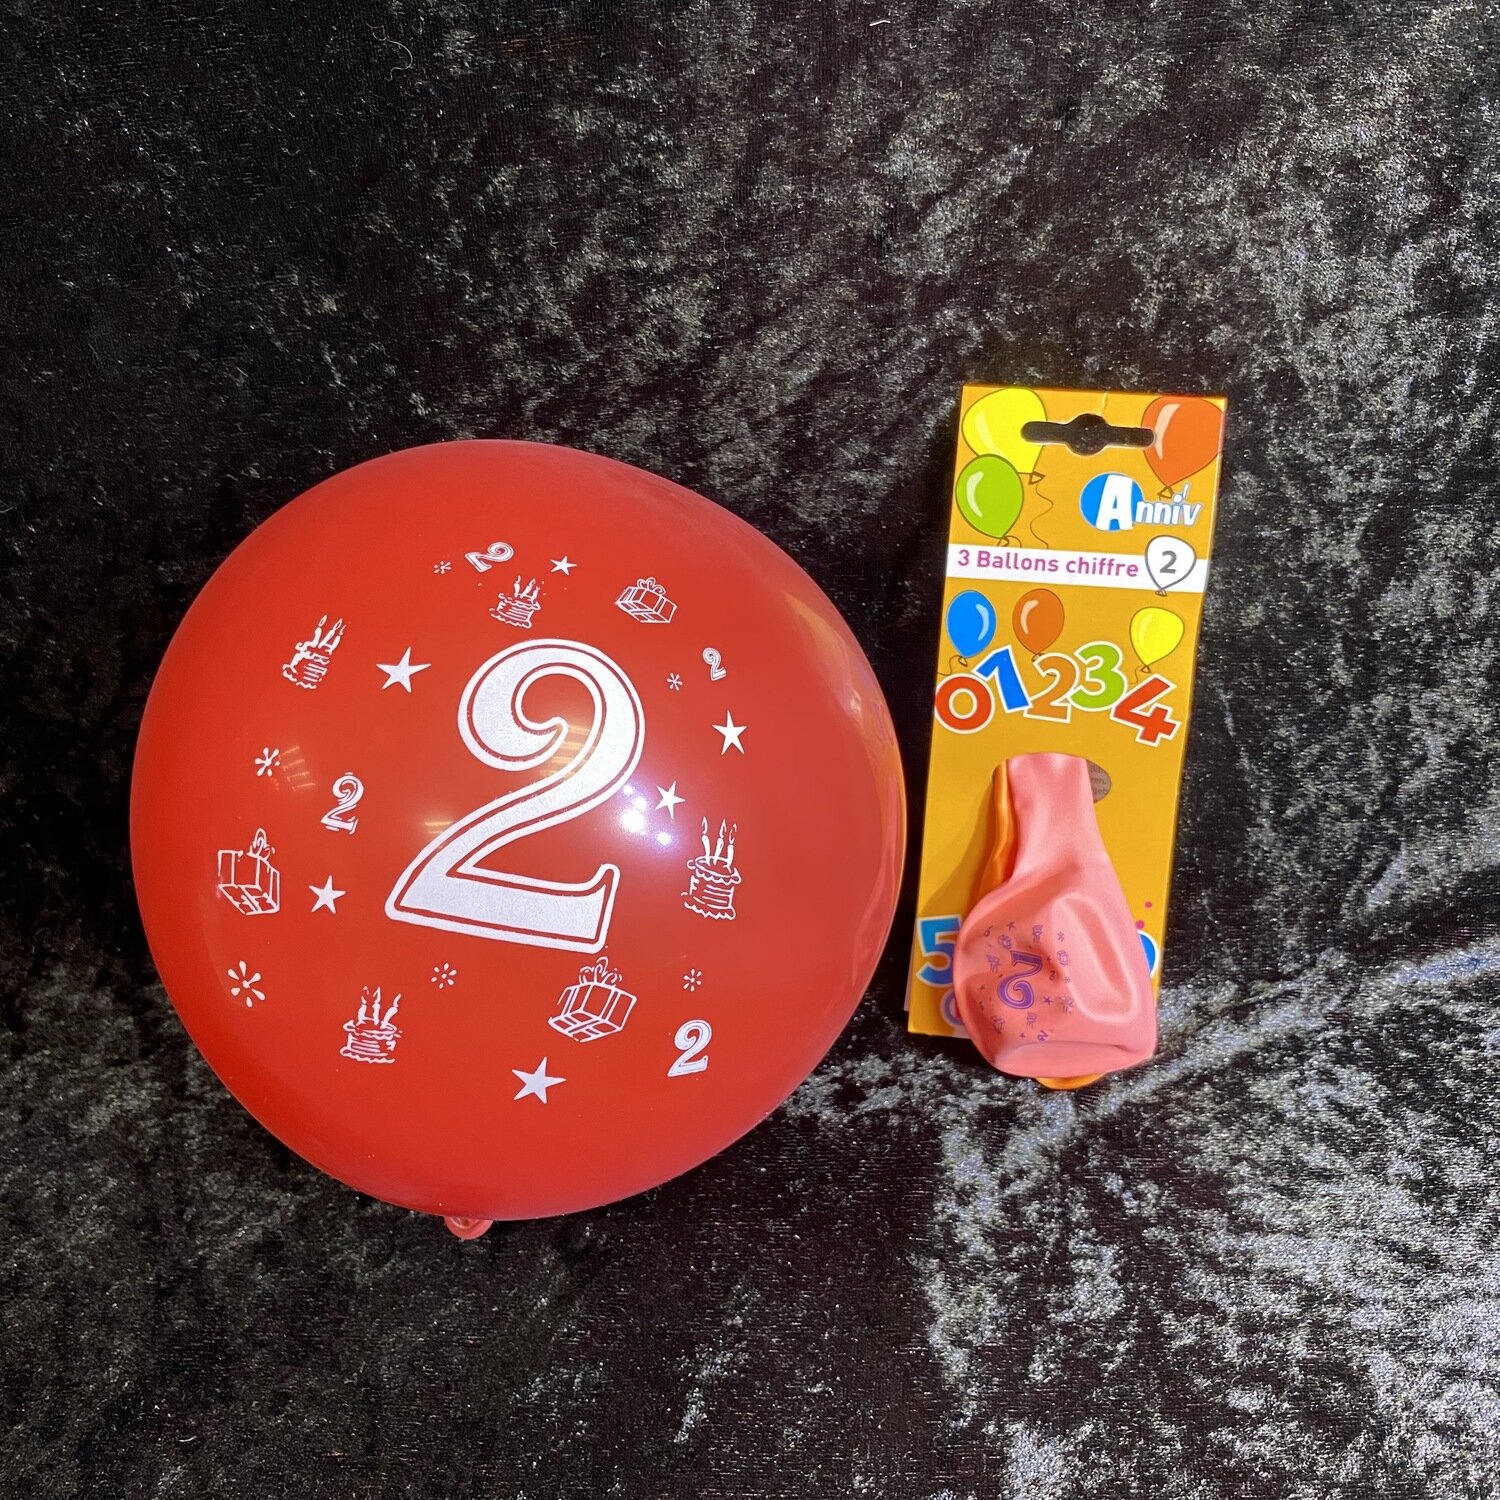 3 ballons age 2 (qualité helium)